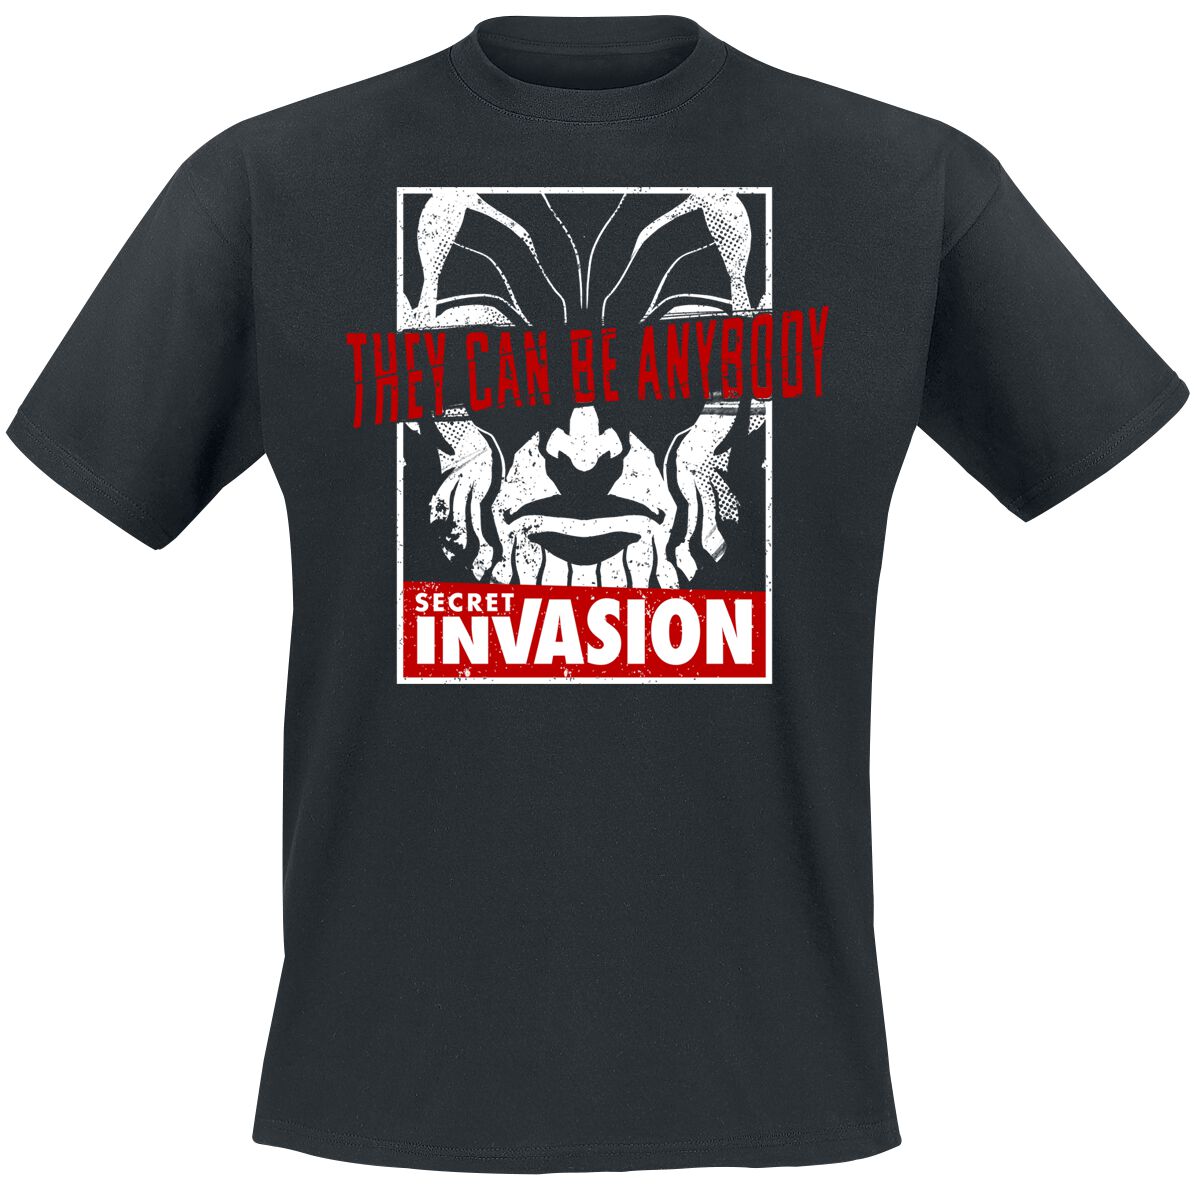 Secret Invasion - Marvel T-Shirt - They Can Be Anybody - S bis XL - für Männer - Größe M - schwarz  - EMP exklusives Merchandise!